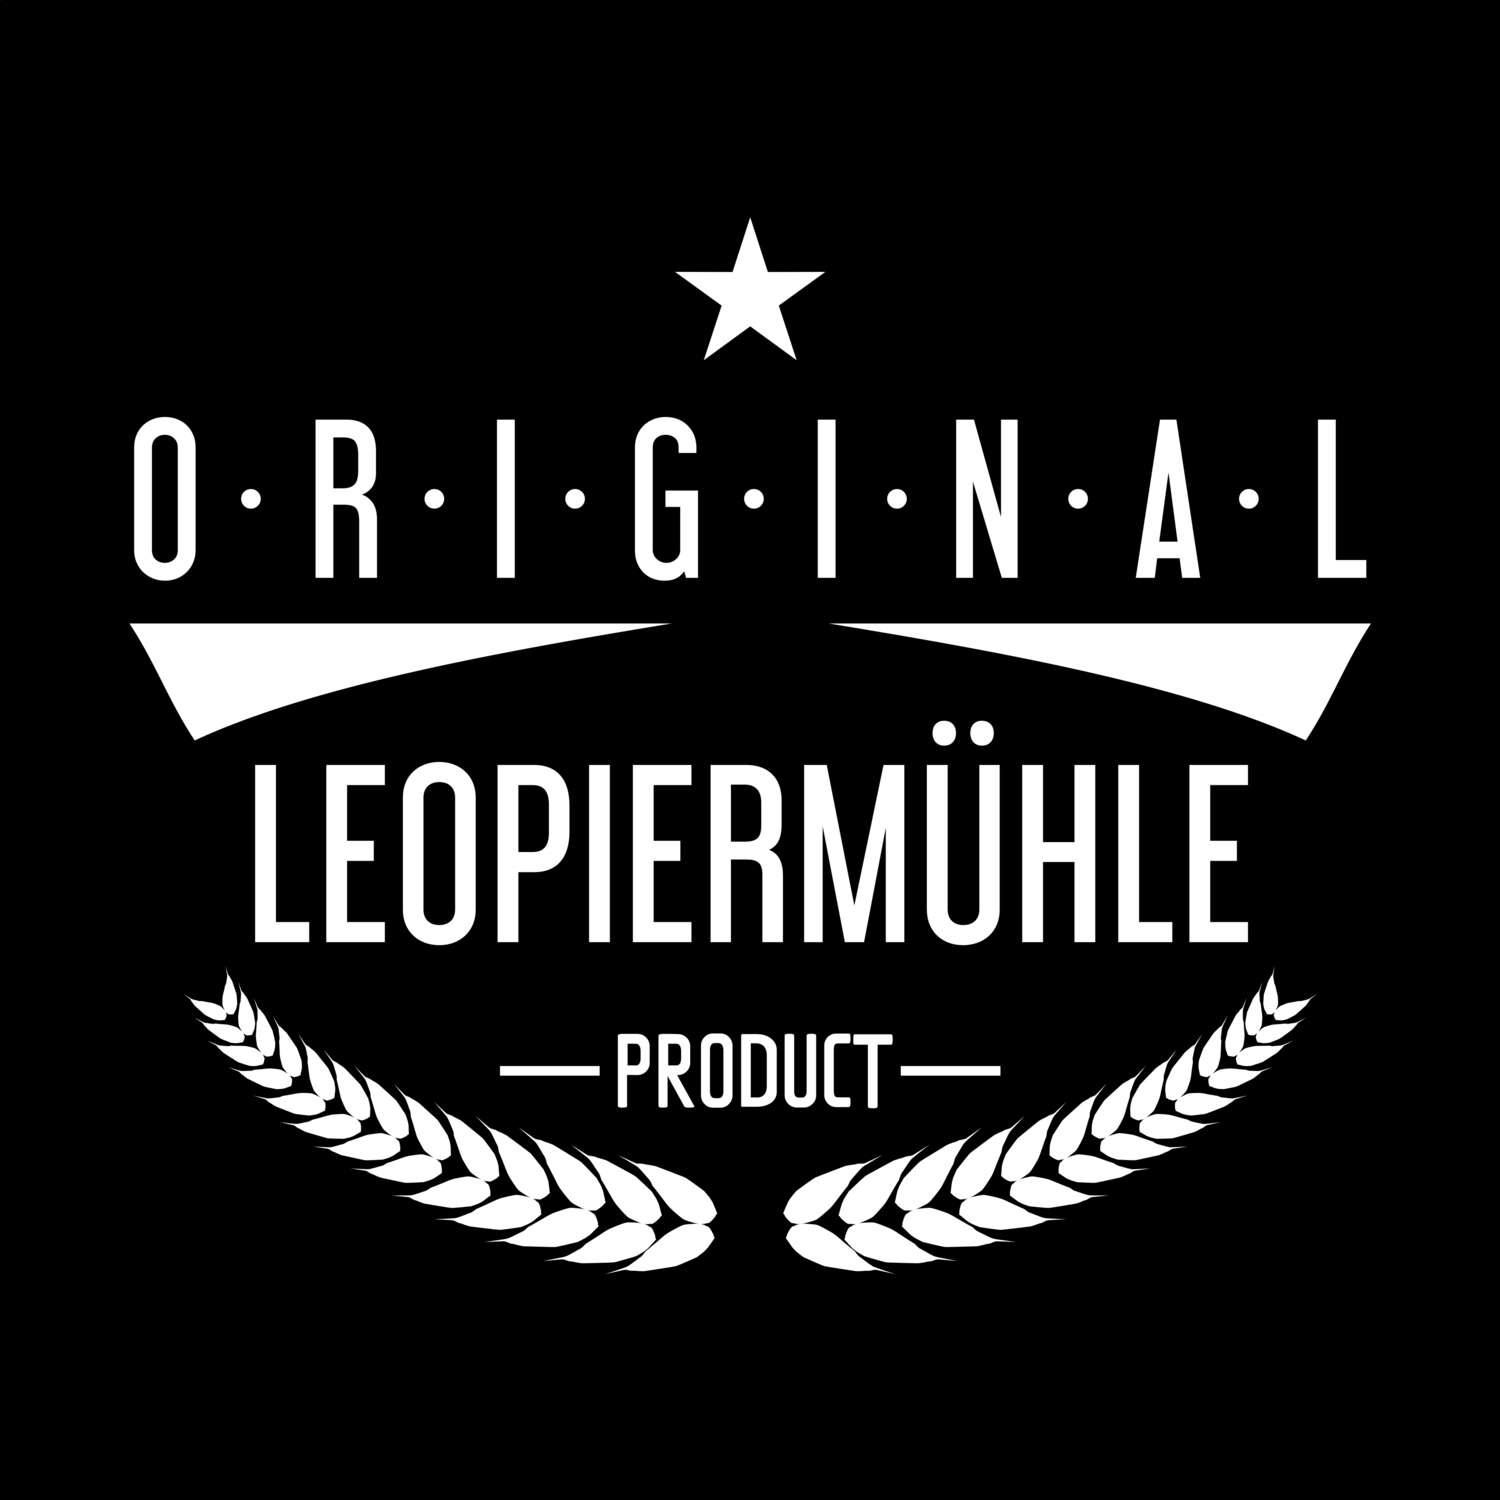 Leopiermühle T-Shirt »Original Product«